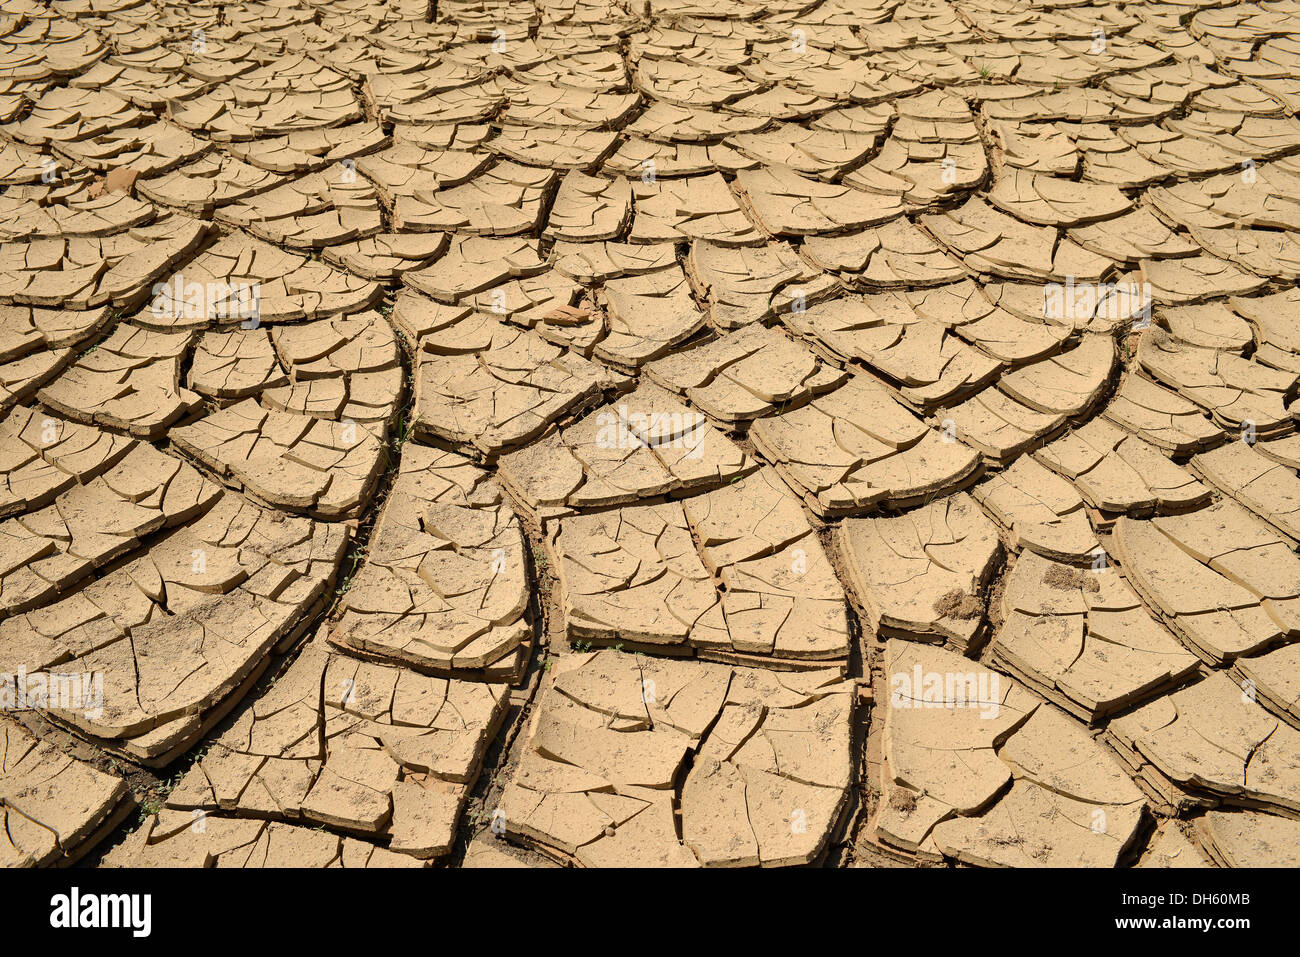 Le manque d'eau, boue fissures dans un trou d'eau asséchés, Painted Desert, réserve Hopi, Navajo Nation Réservation, Arizona Banque D'Images